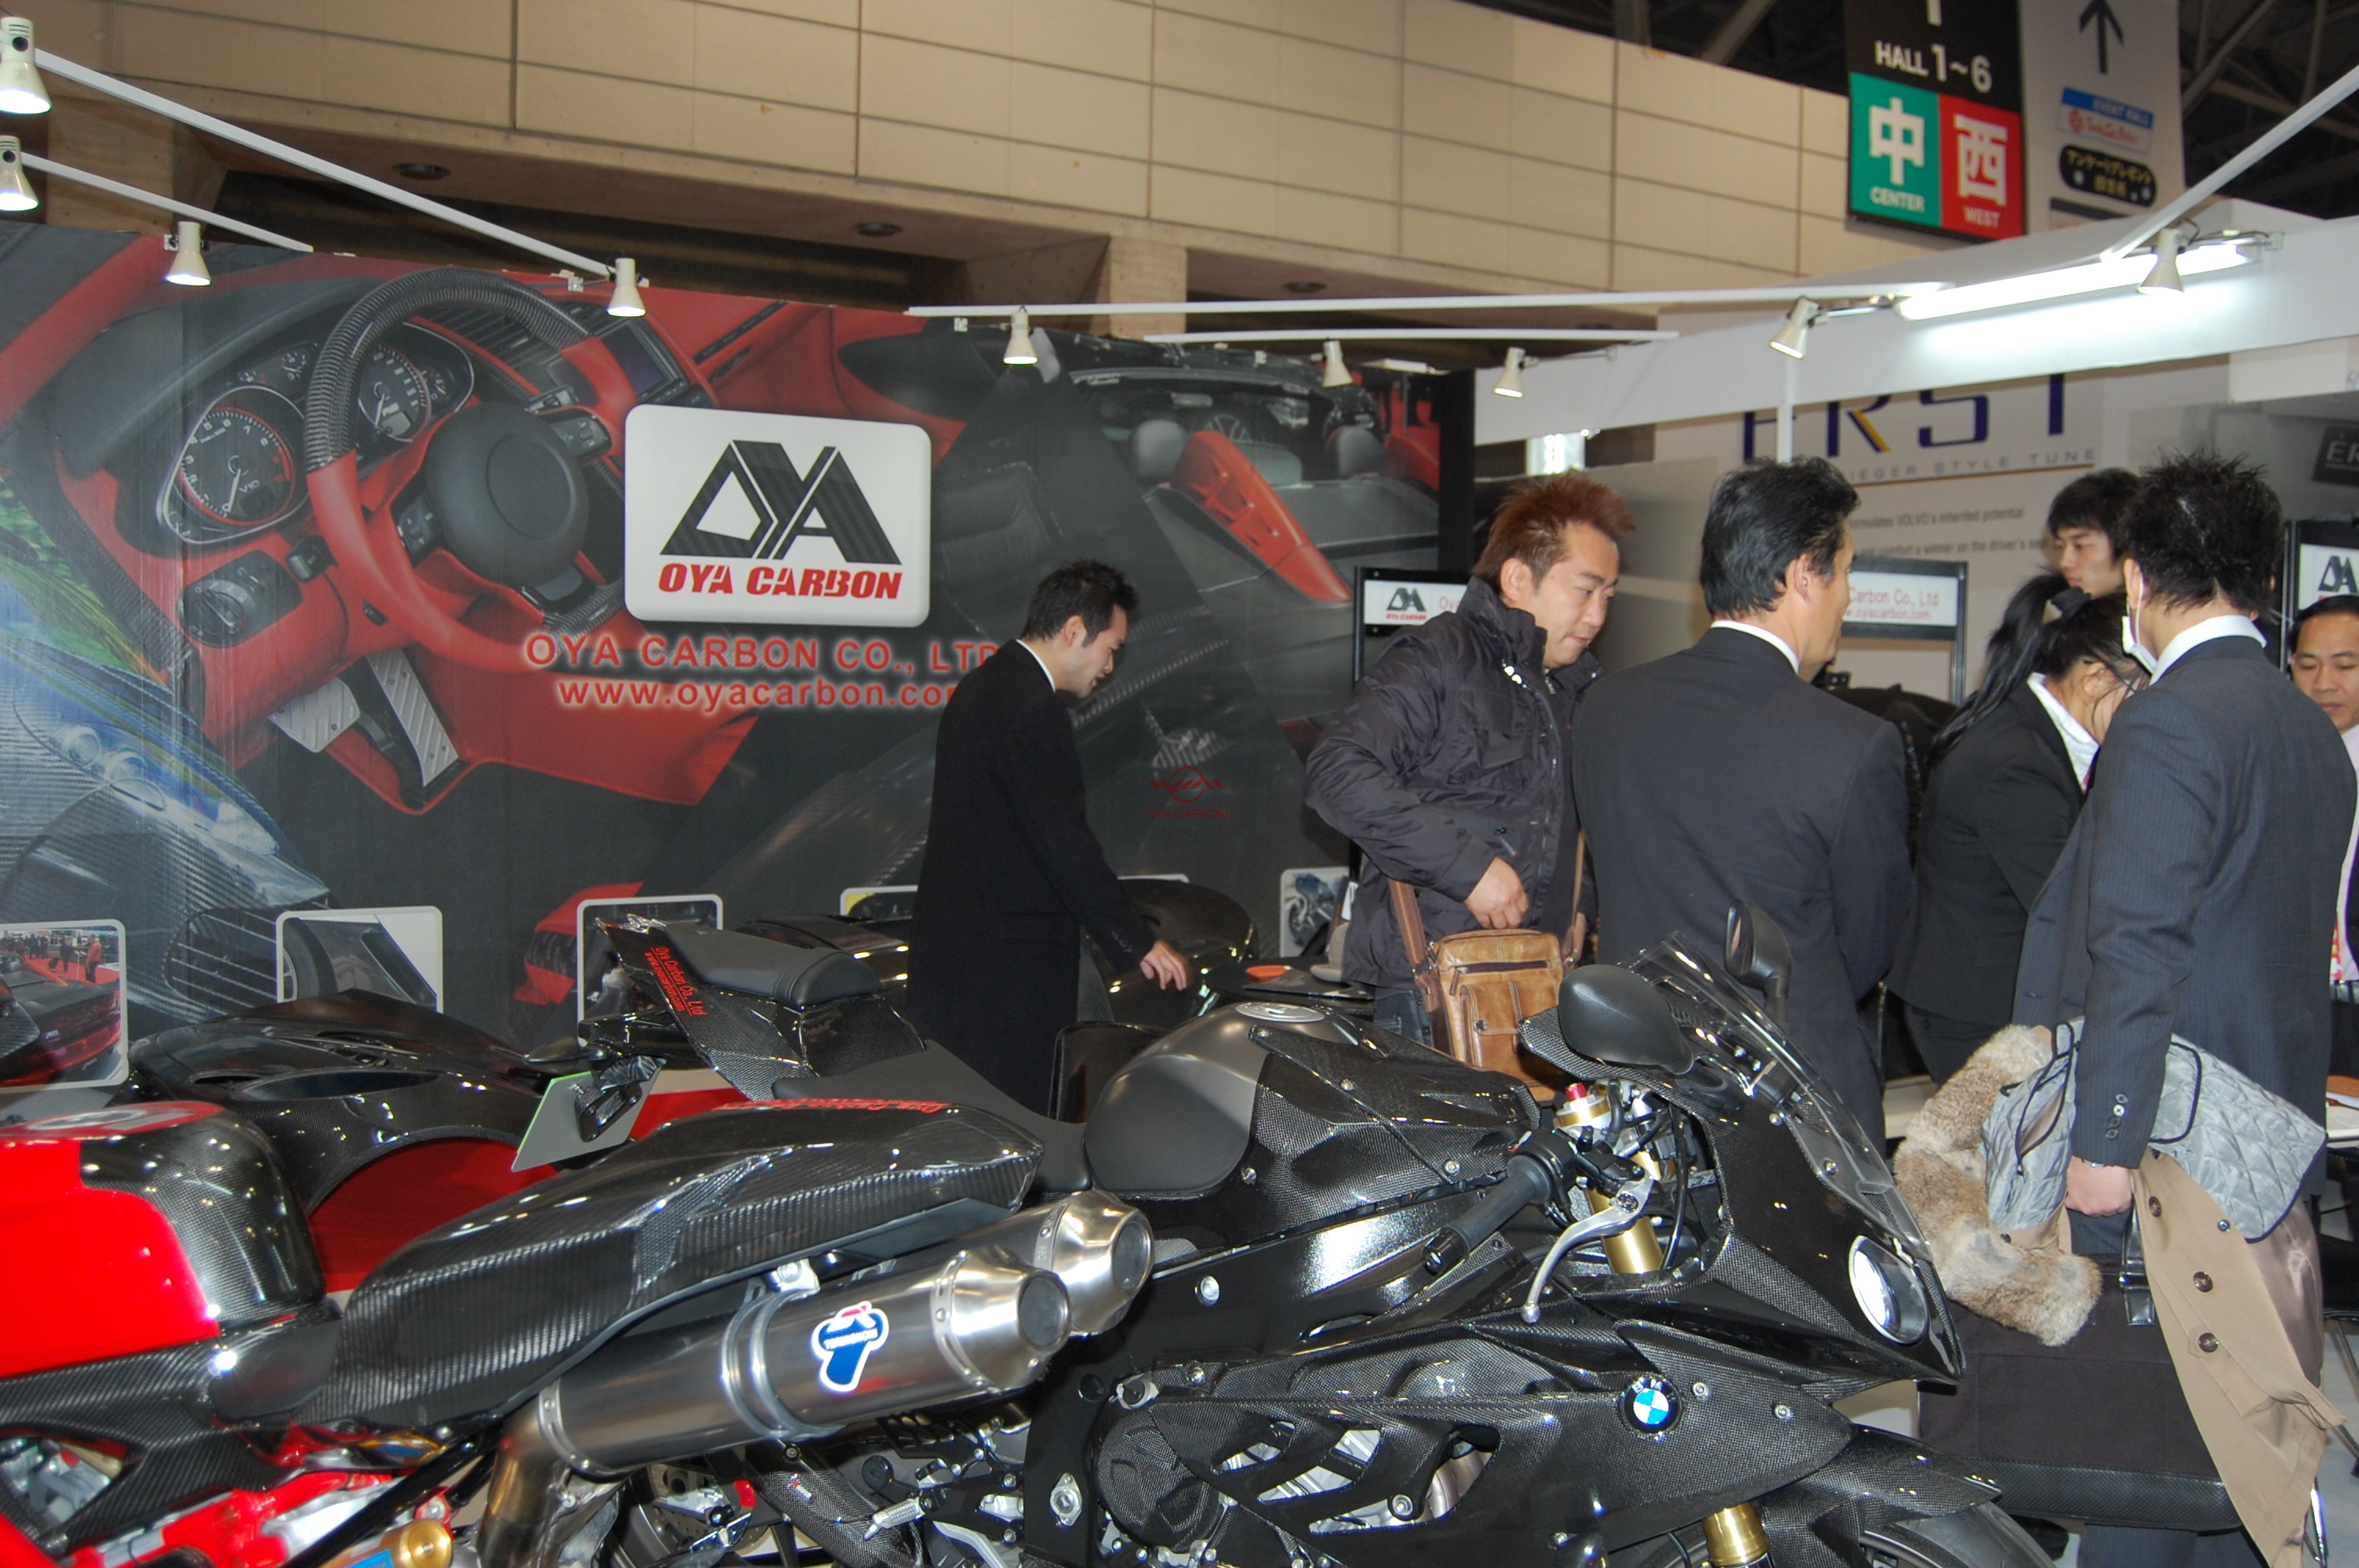 日本东京改装车展Tokyo Auto Salon 2012.1.13-1.15 33